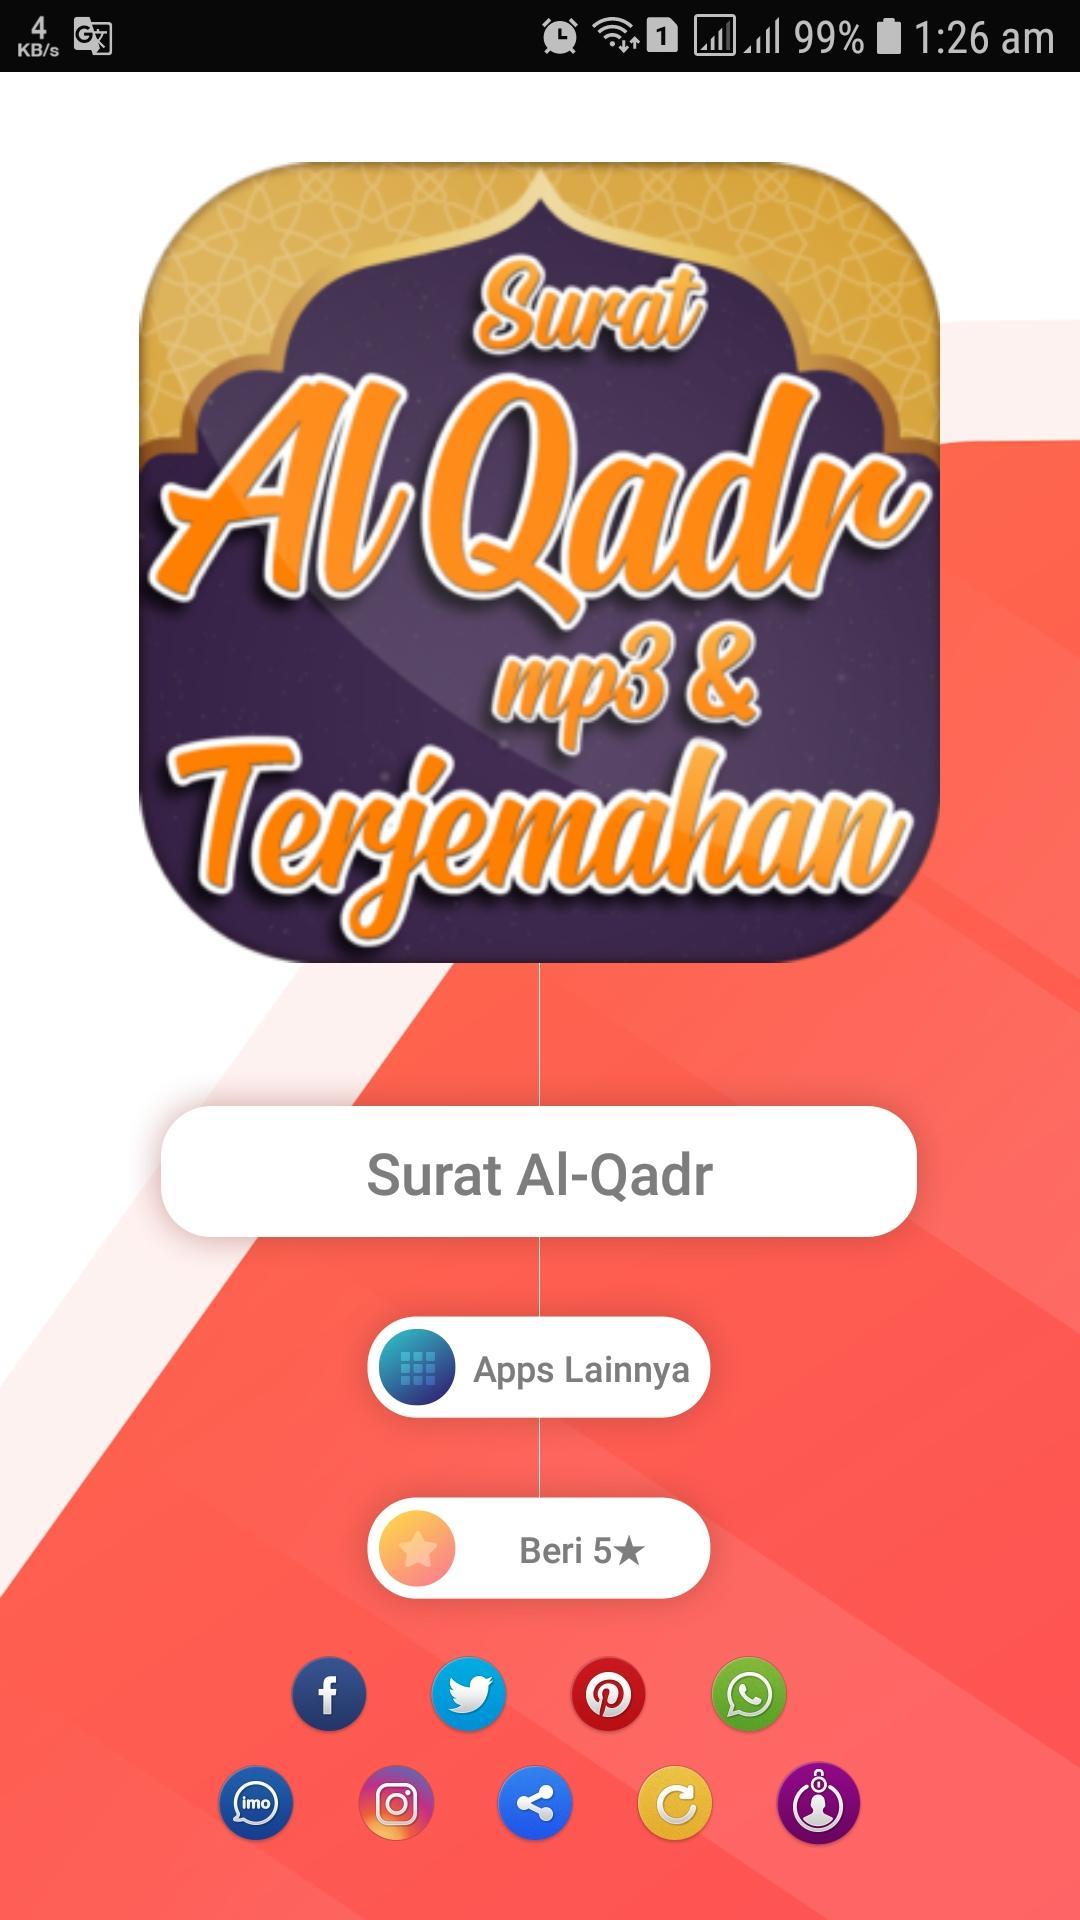 Surat Al Qadr Mp3 Dan Terjemah For Android Apk Download